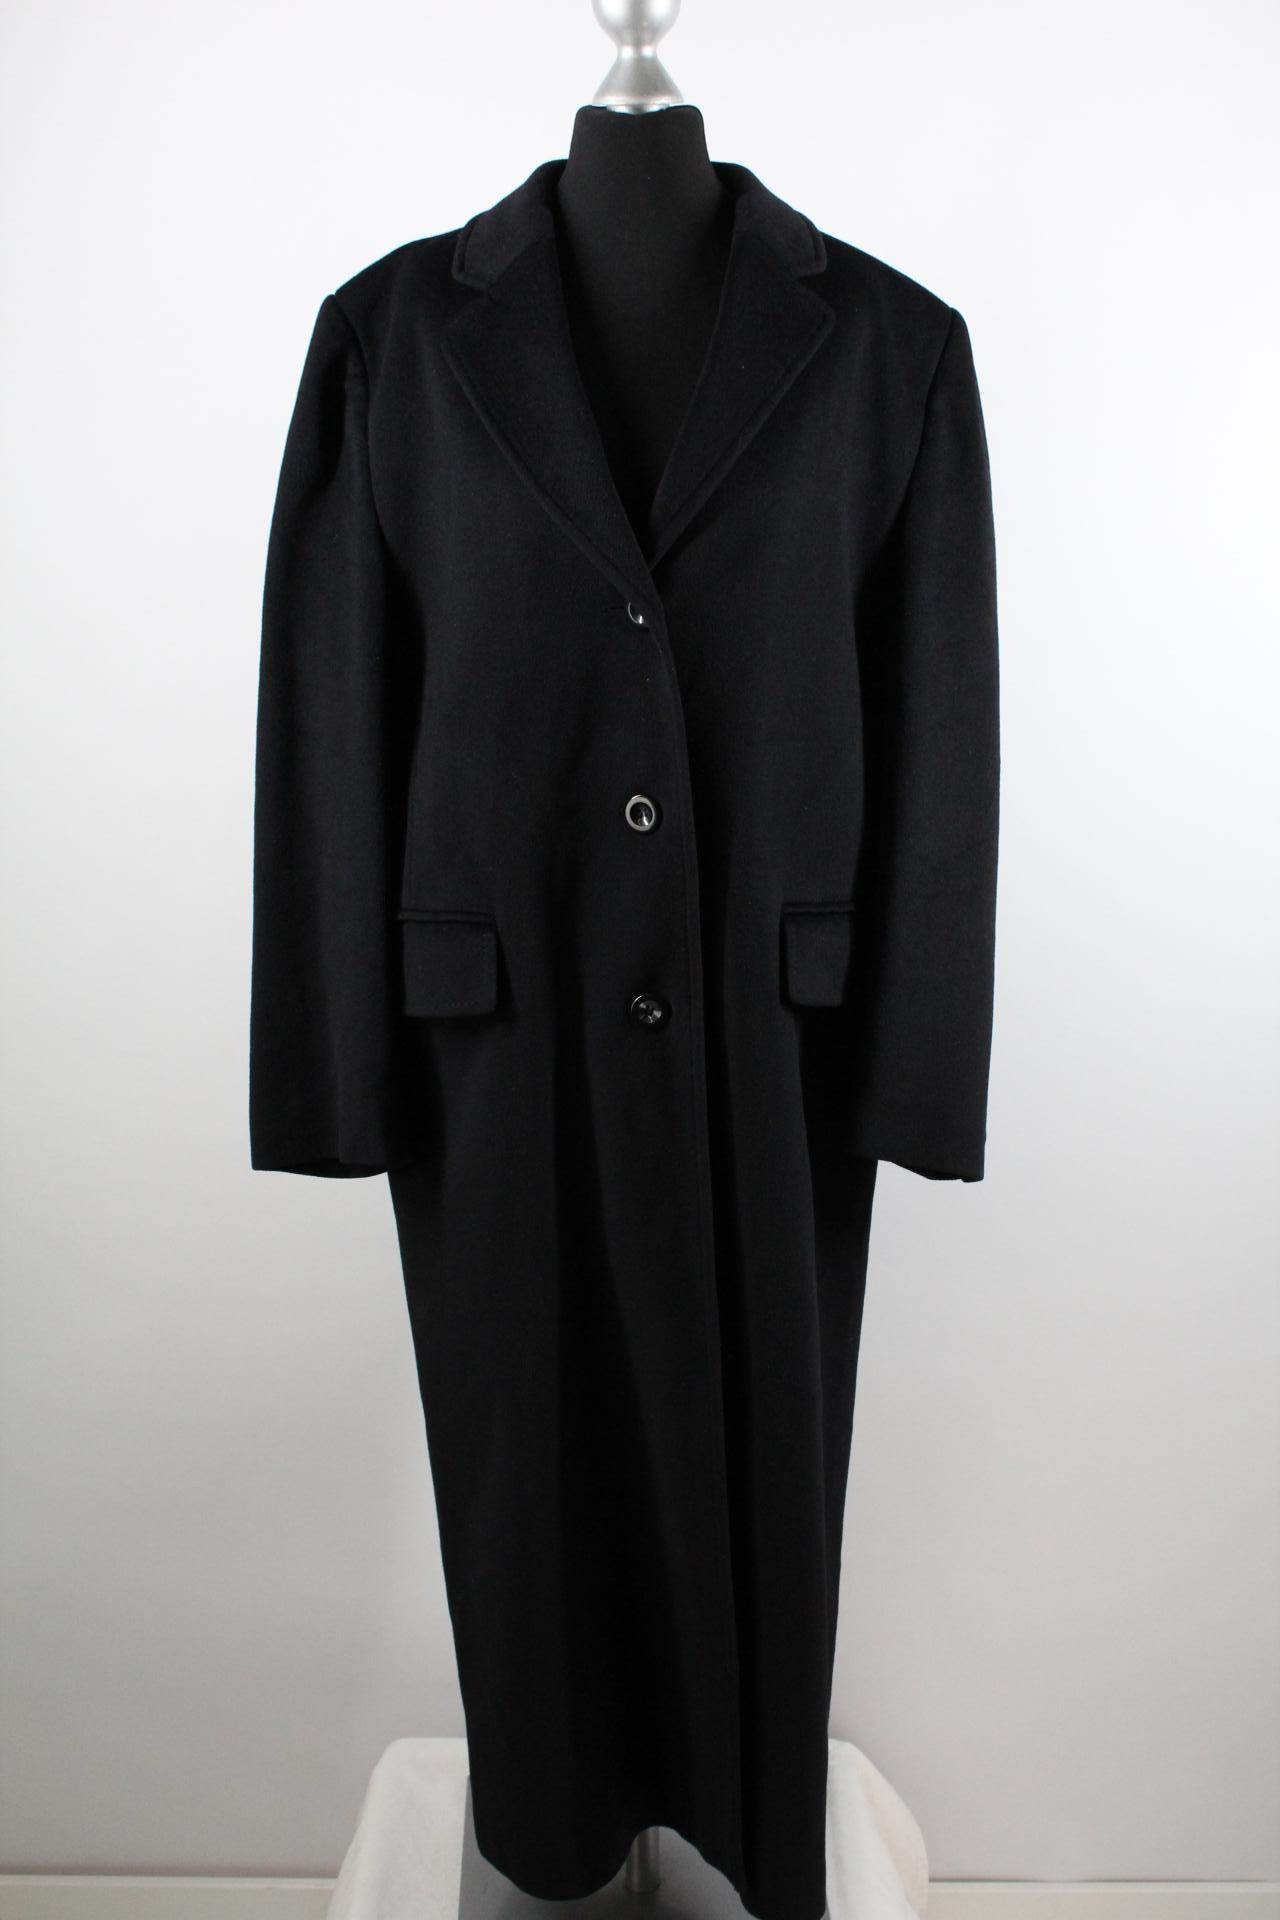 Calw Damen-Mantel schwarz Größe 38